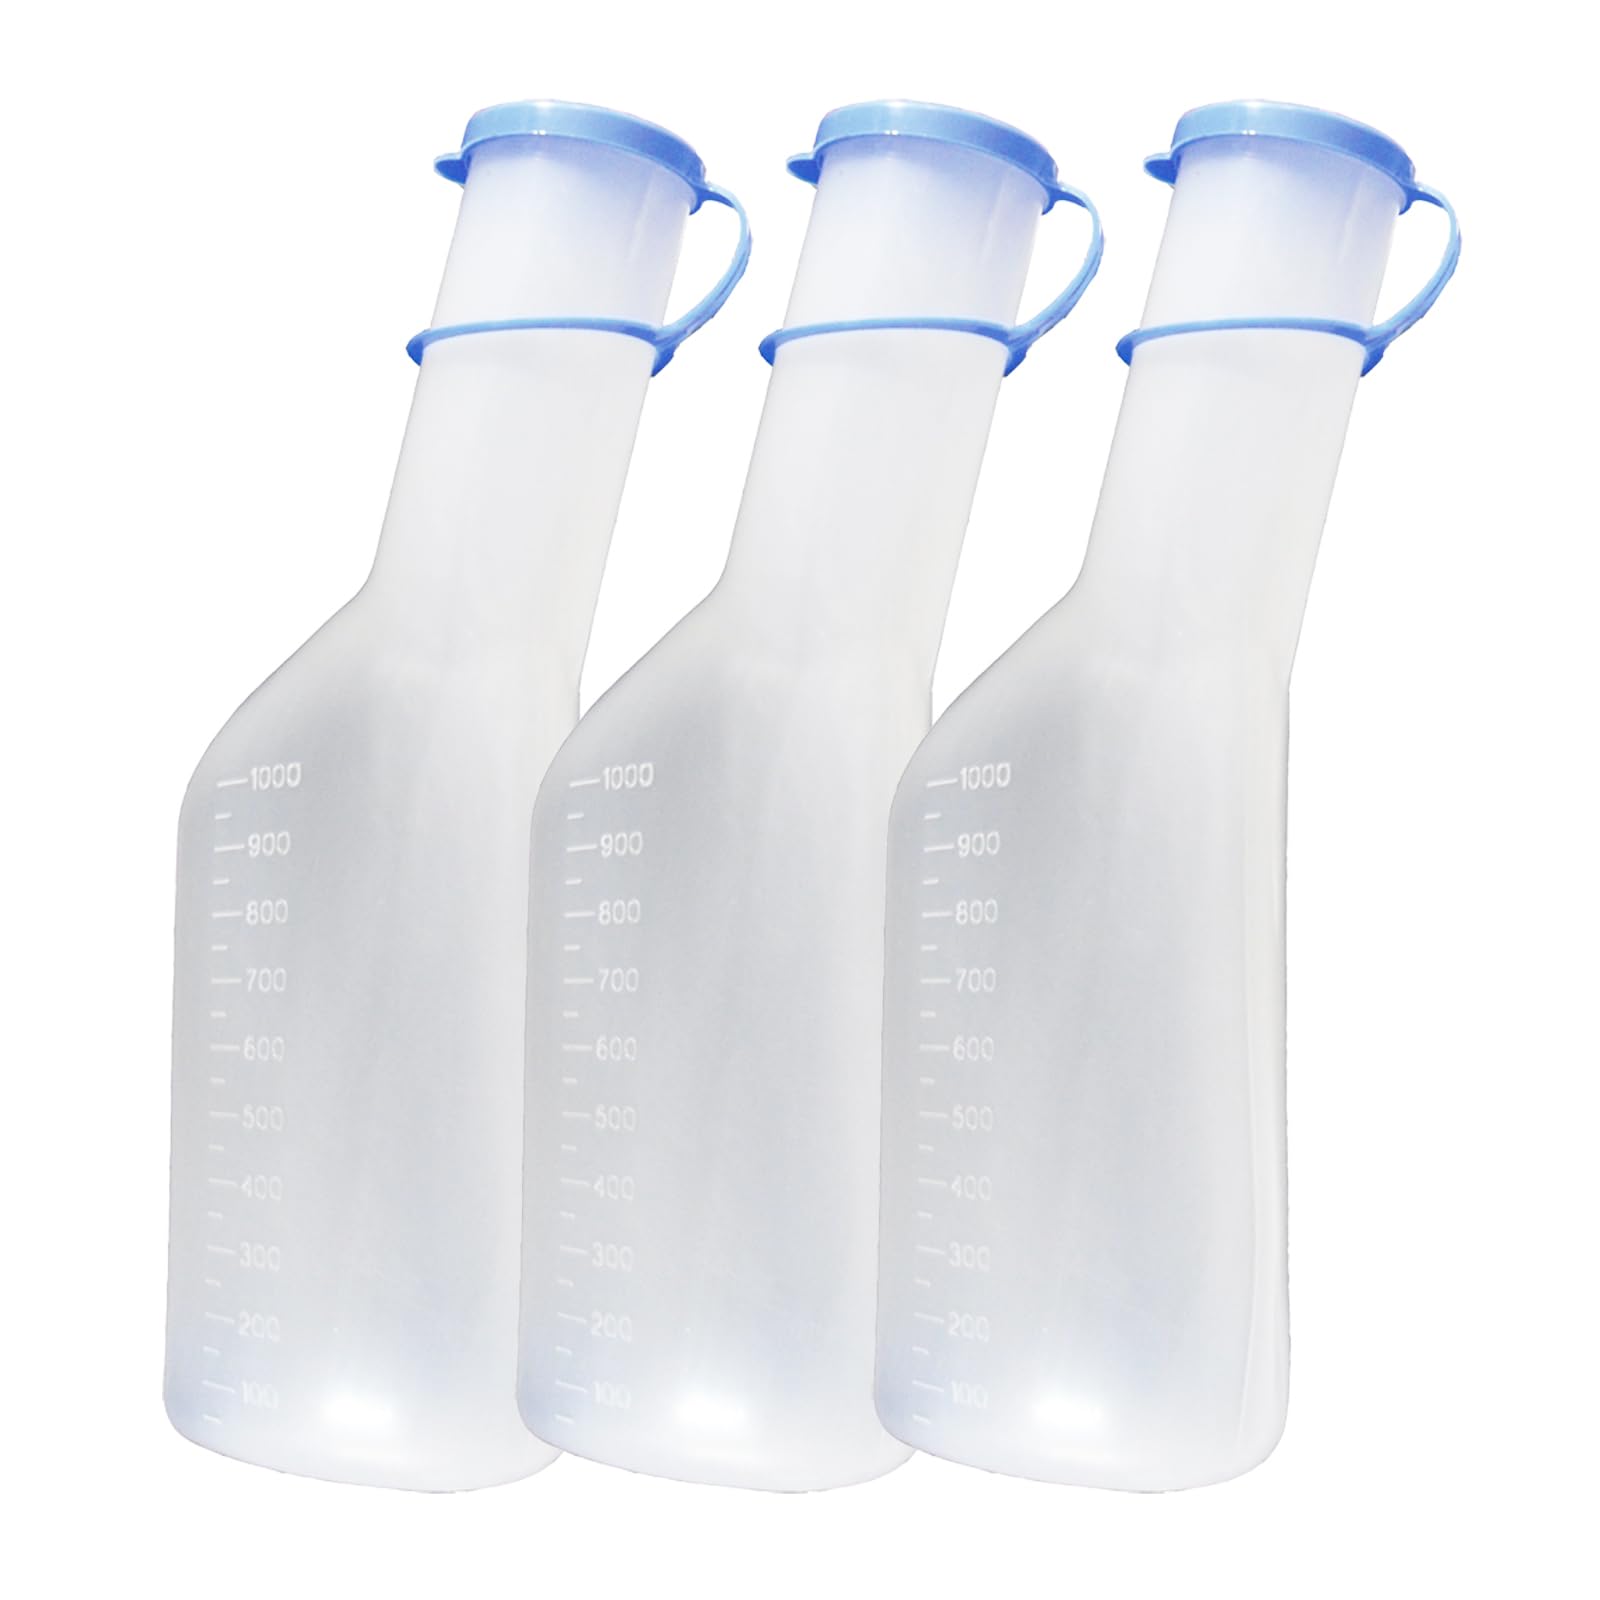 Urinflasche 1Ltr. für Männer 10er Set (= 10 Flaschen) Urinflaschen mit Deckel Original Tiga-Med